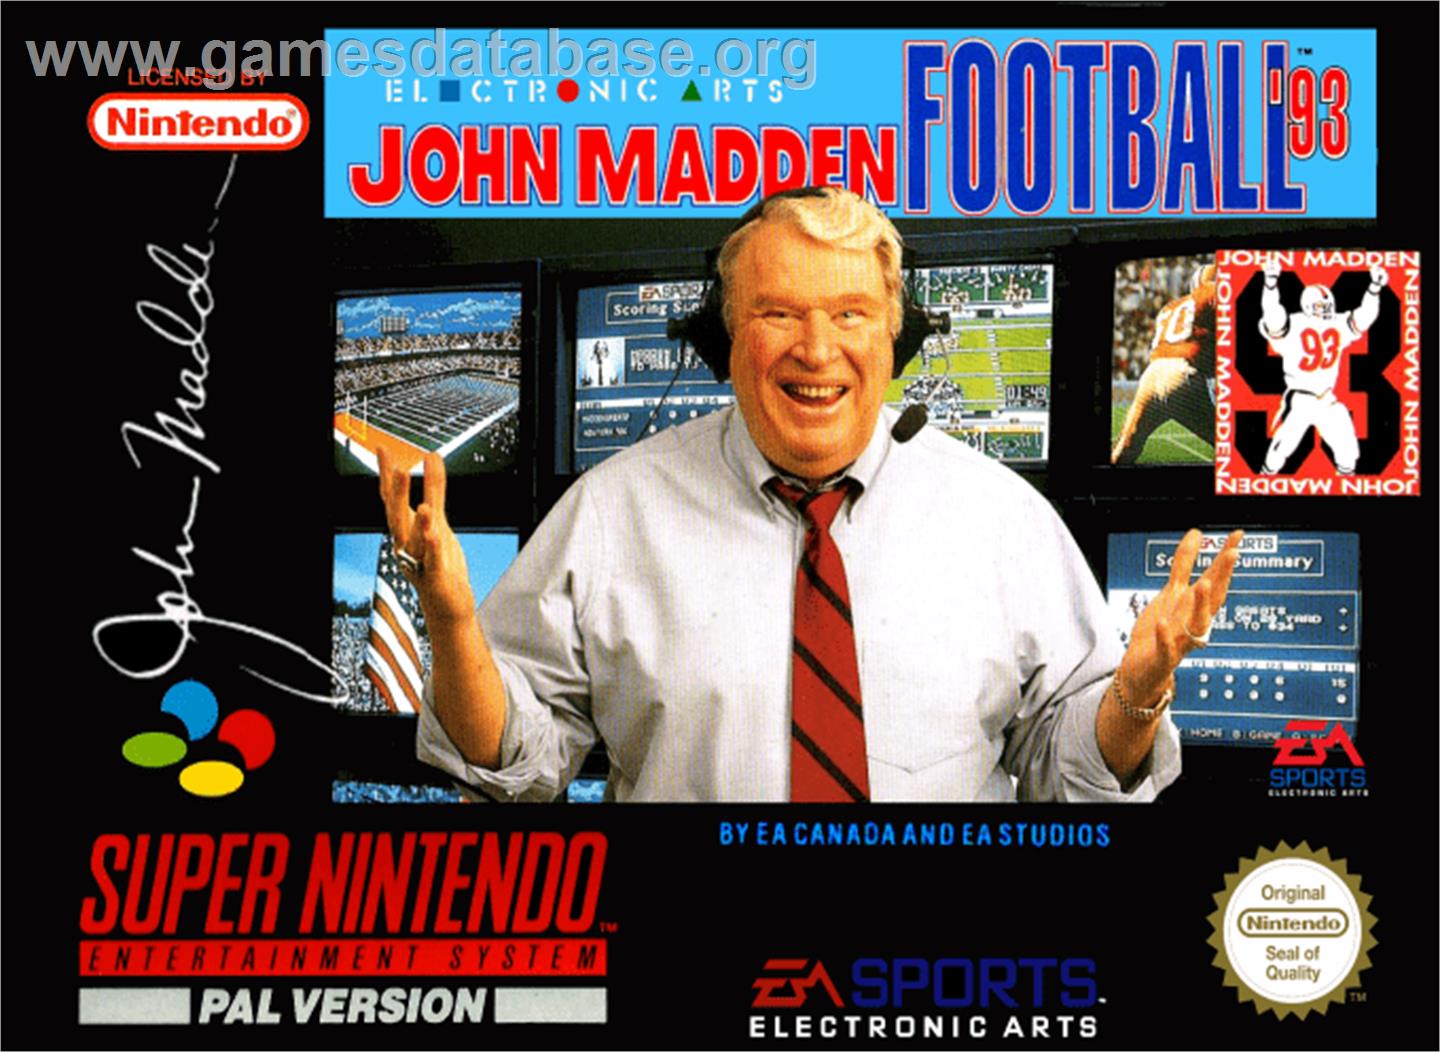 John Madden Football '93 - Nintendo SNES - Artwork - Box